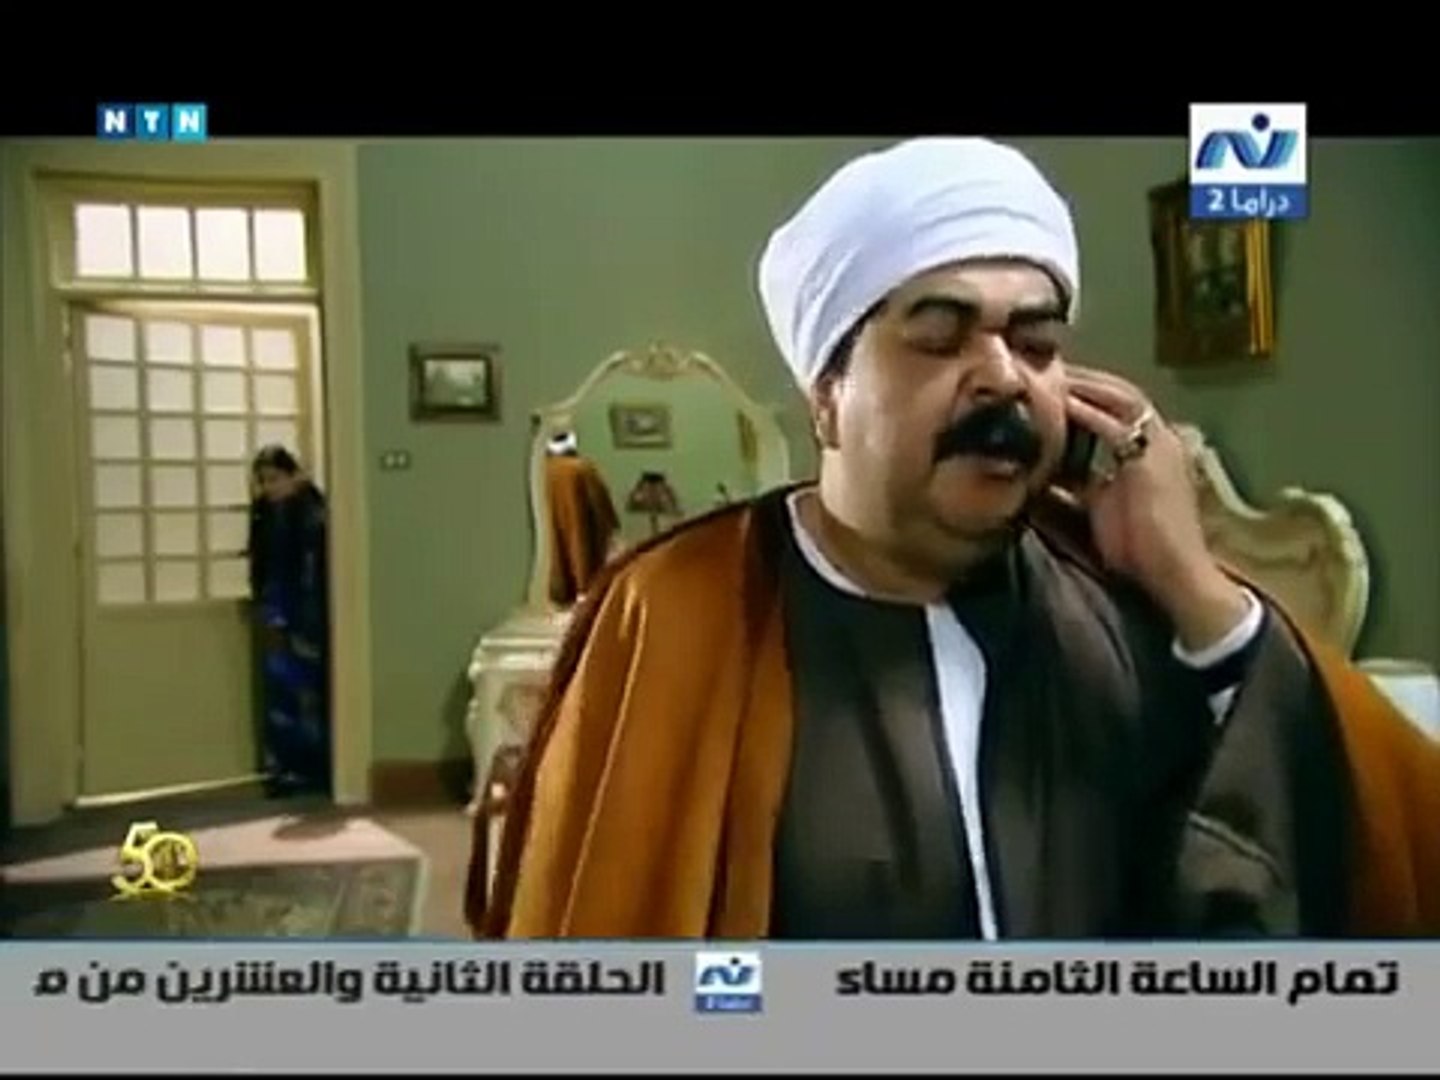 الحلقه 22 من المسلسل الدرامي المصري موعد مع الوحوش - video Dailymotion